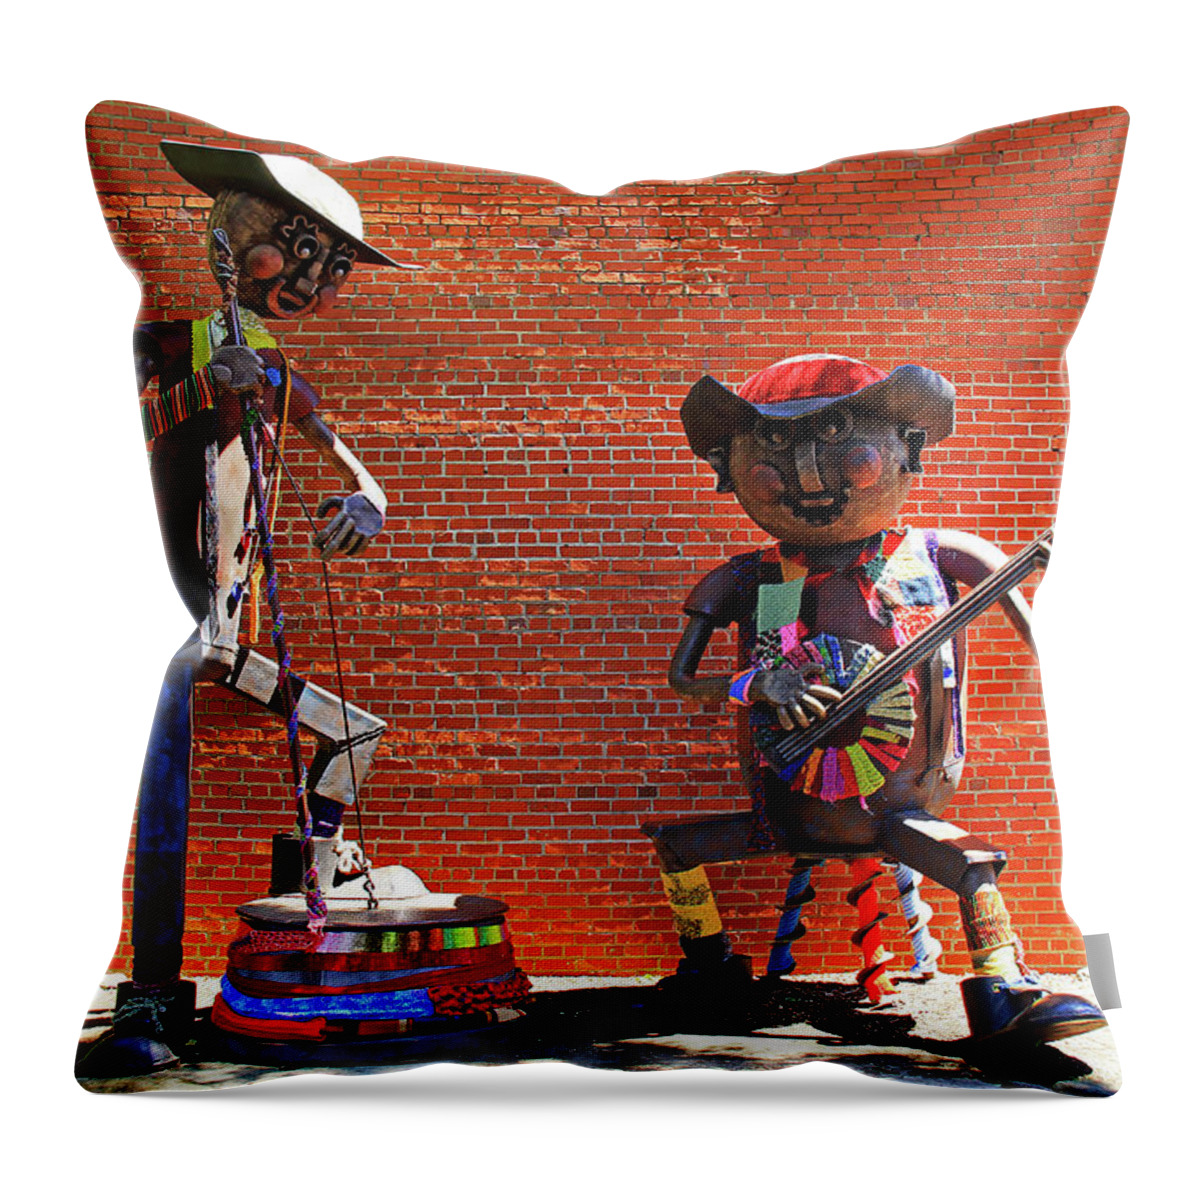 Folk Art Throw Pillow featuring the photograph Folk Art by Richard Krebs